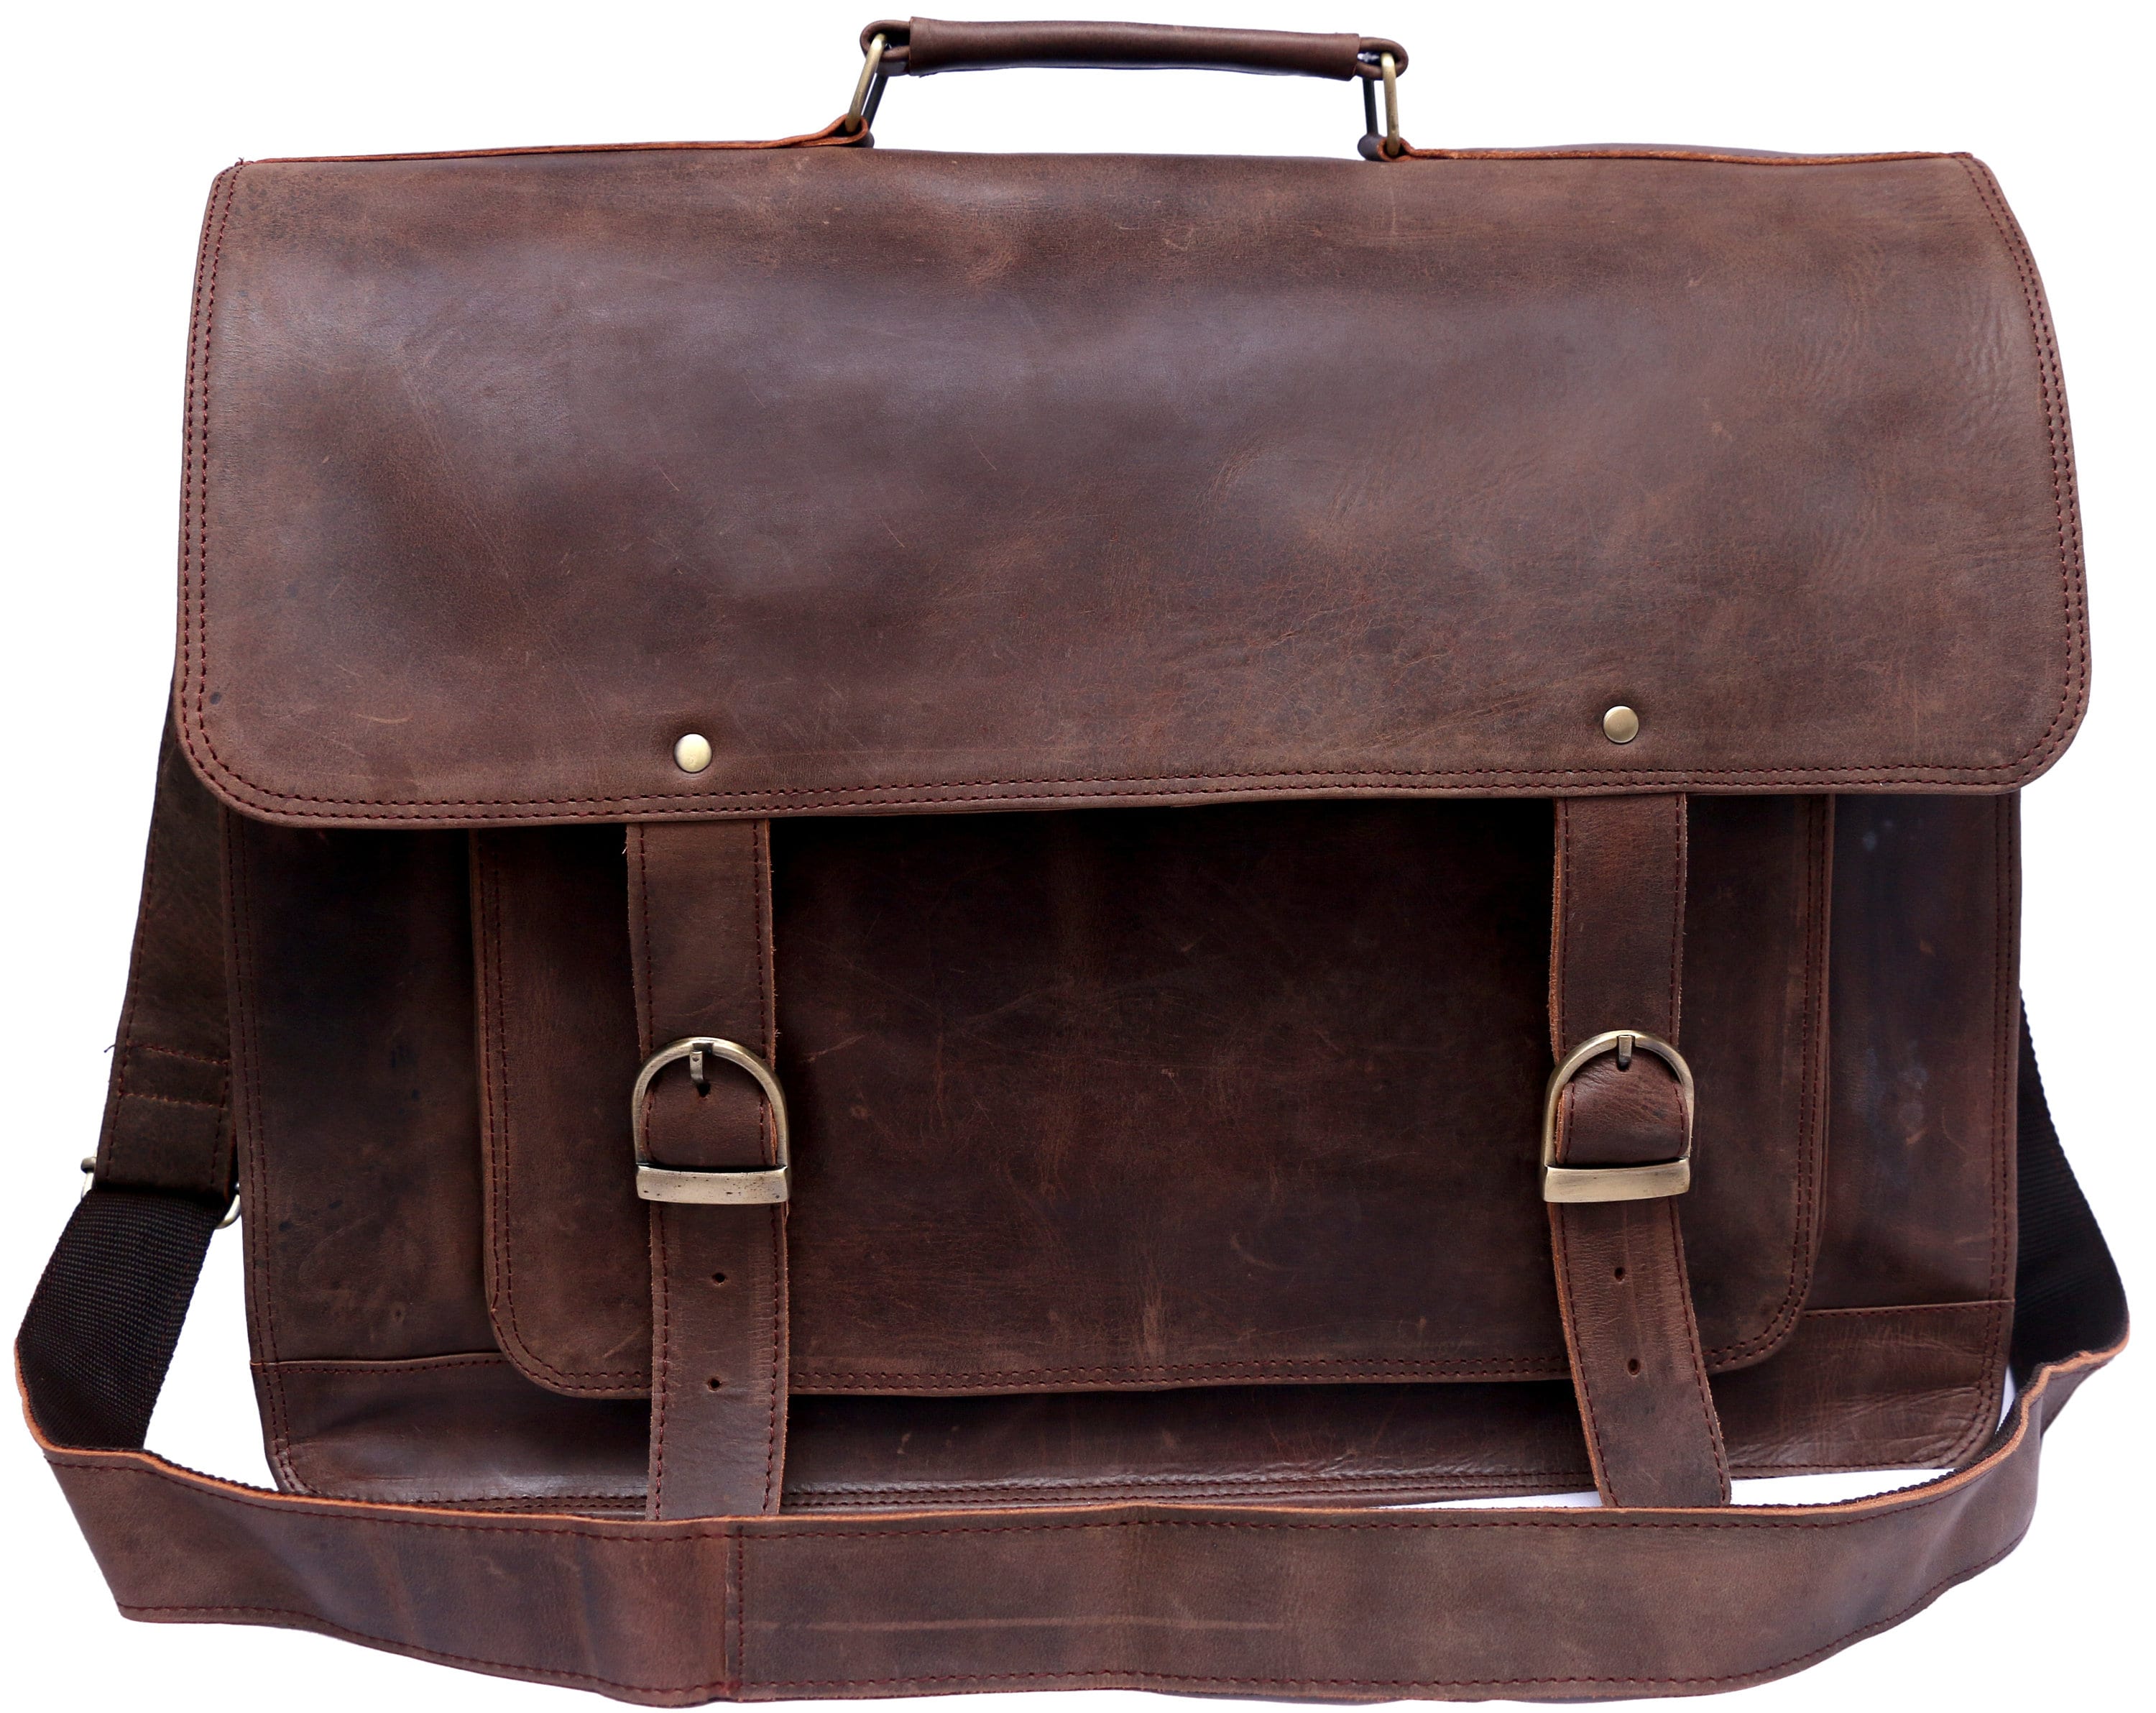 Rustic Look Leather Messenger Bag Leather Laptop Bag Men | Etsy